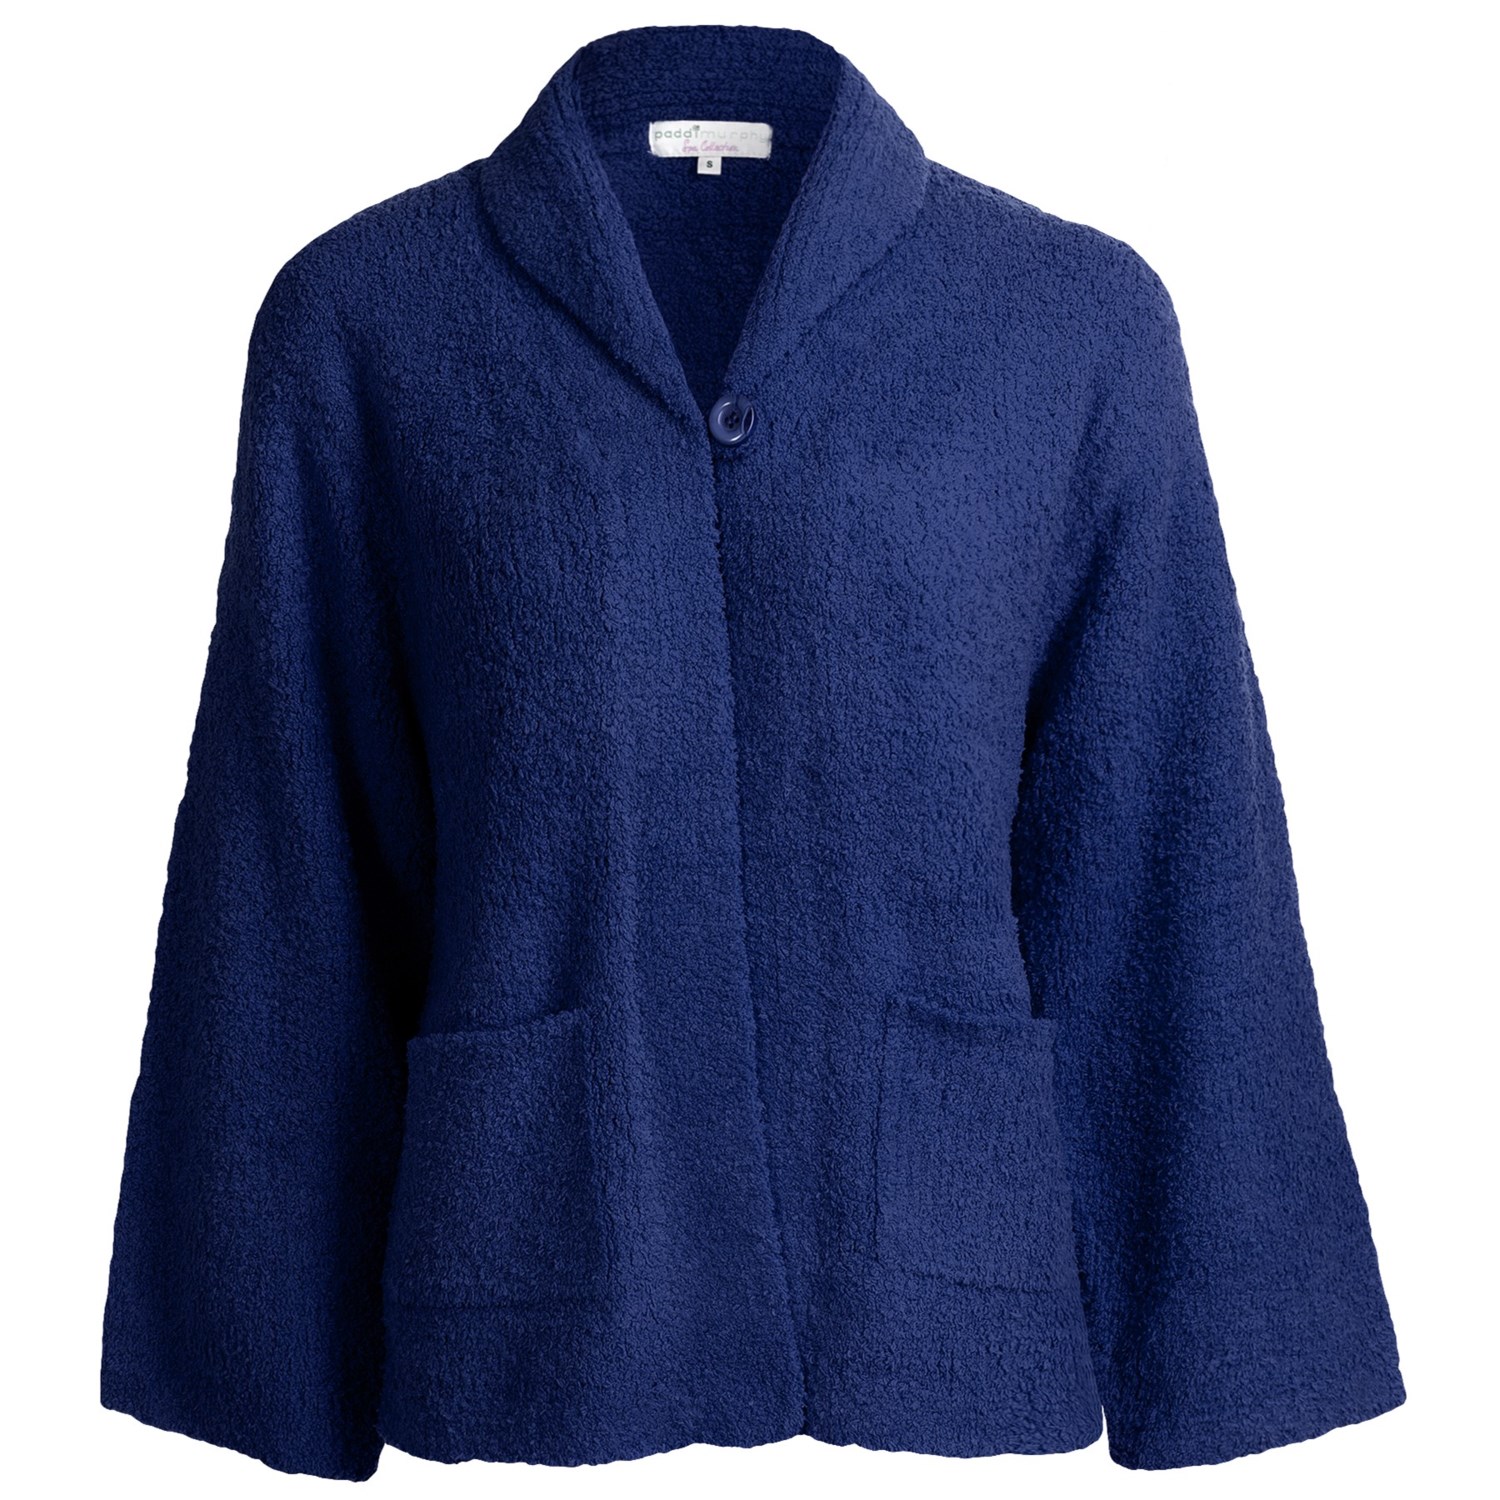 Paddi Murphy Marshmallow Soft Bed Jacket (For Women) - Save 56%